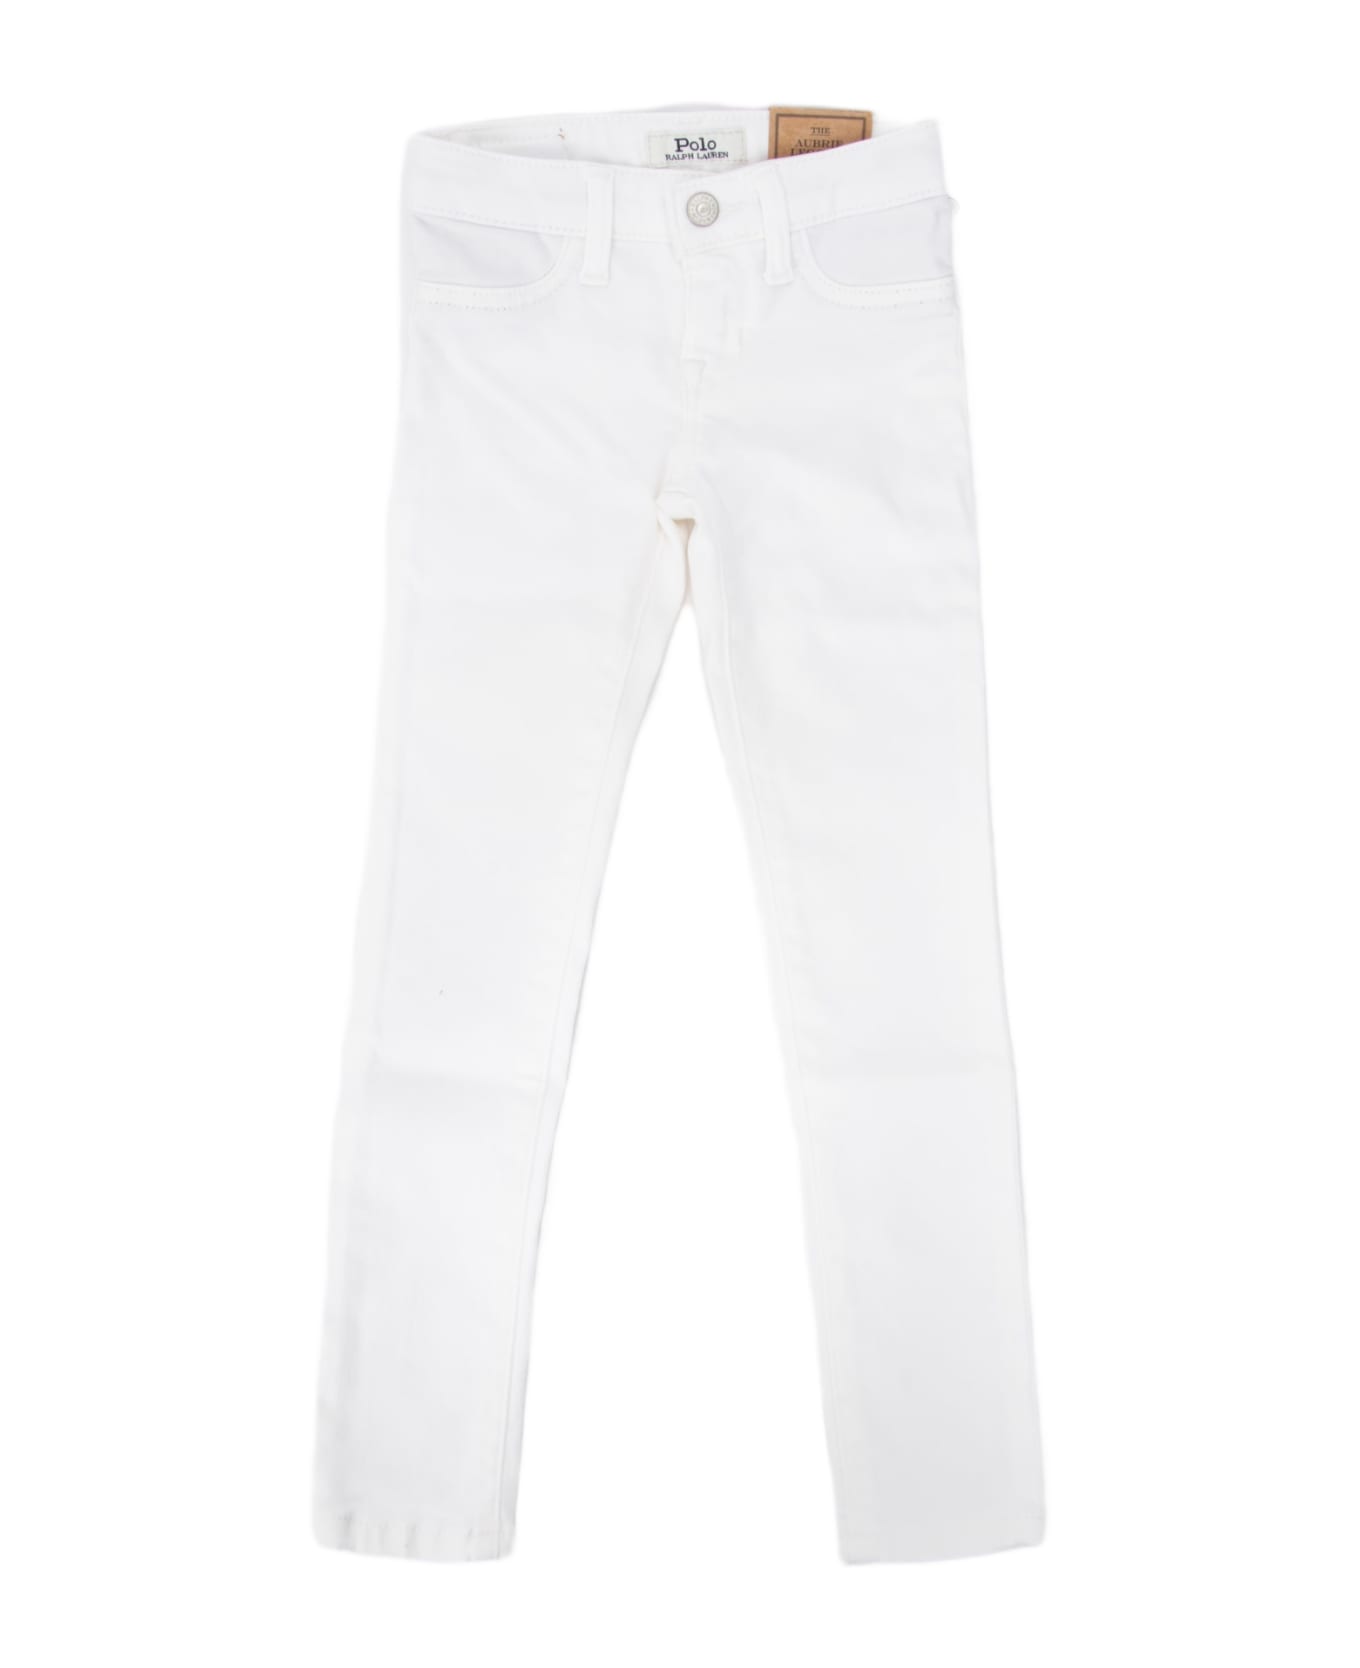 Polo Ralph Lauren Pantalone Jeans - 001